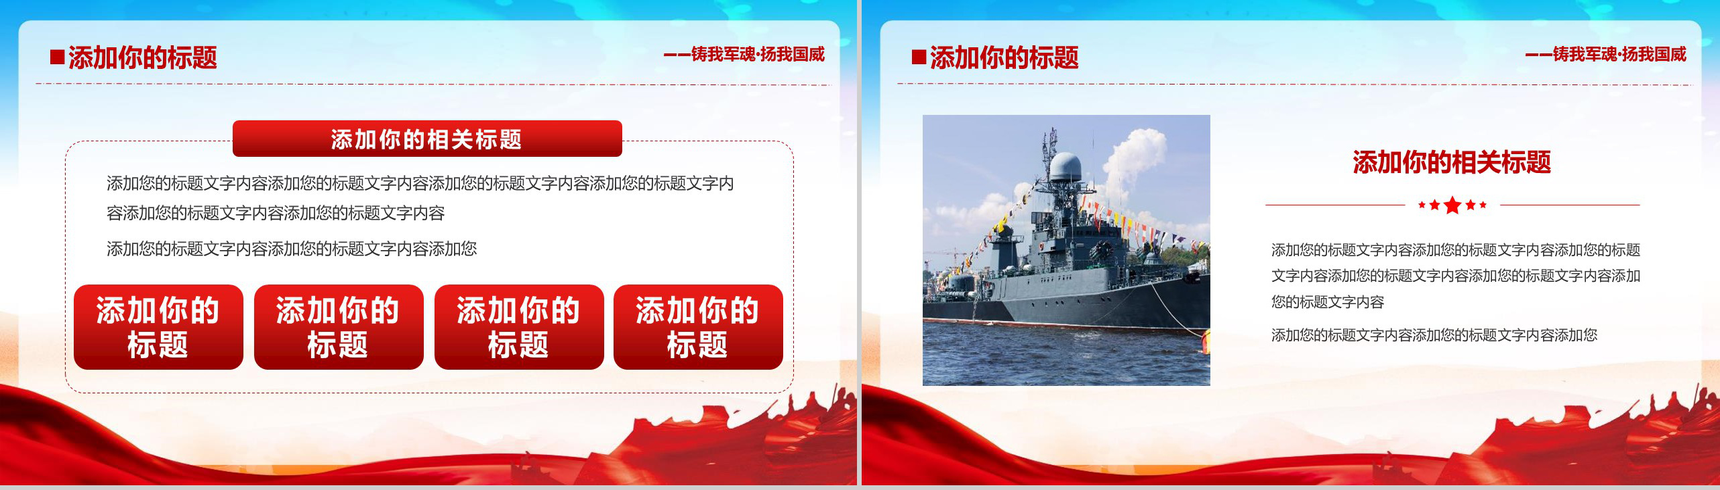 中国海军成立70周年活动现场PPT模板-11